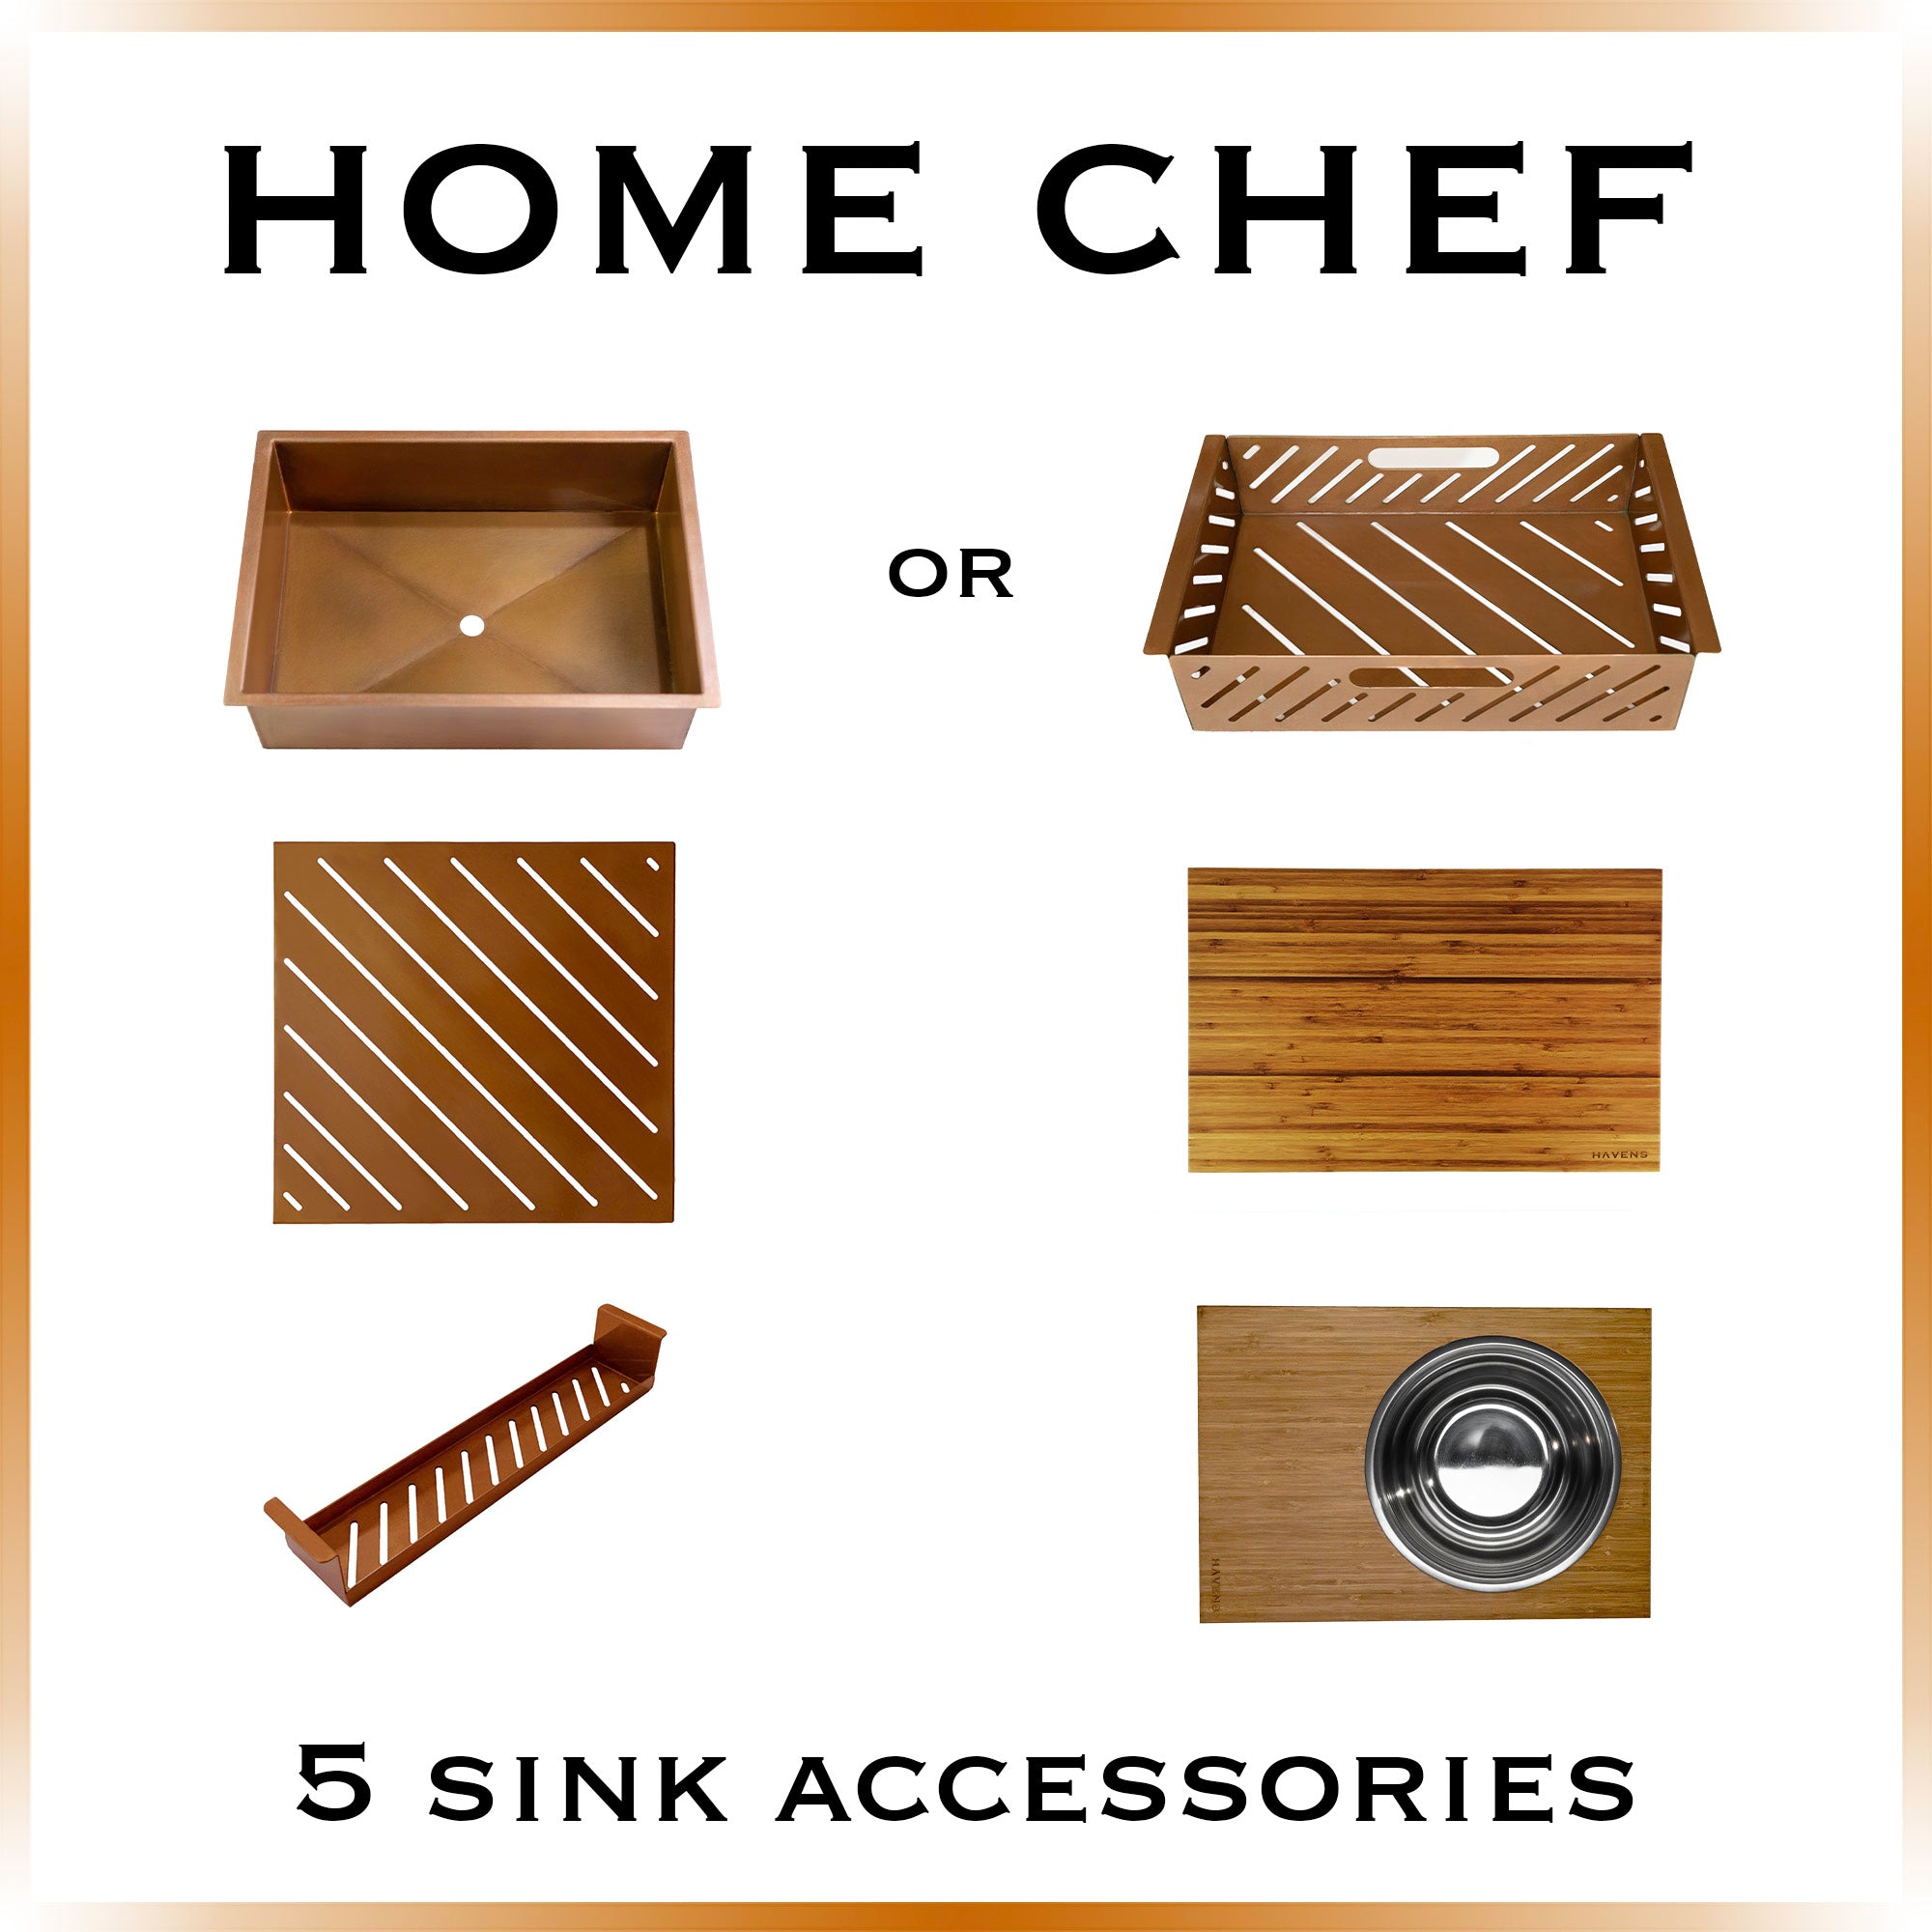 Home Chef (5 Accessories) Pure Copper